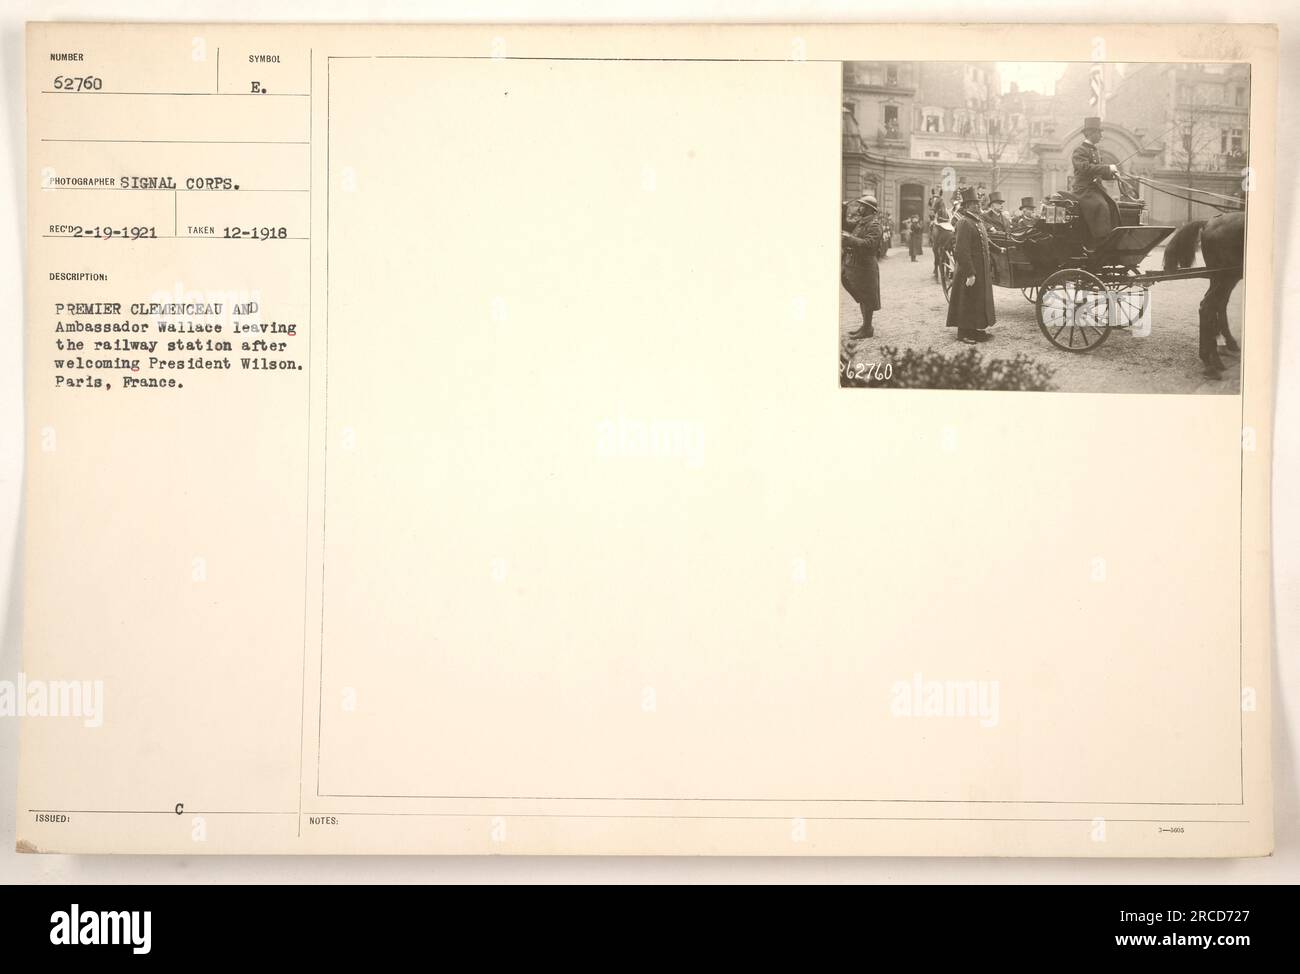 Premierminister Clemenceau und Botschafter Wallace begrüßen Präsident Wilson in Paris, Frankreich, nach seiner Ankunft am Bahnhof. Dieses Foto wurde im Dezember 1918 aufgenommen und zeigt den historischen Moment. Angesichts der Beschreibung des Fotos wurde es mit Notizen mit der Nummer 62760 herausgegeben und stammt aus der Sammlung „Fotografien amerikanischer Militäraktivitäten während des Ersten Weltkriegs“. Stockfoto